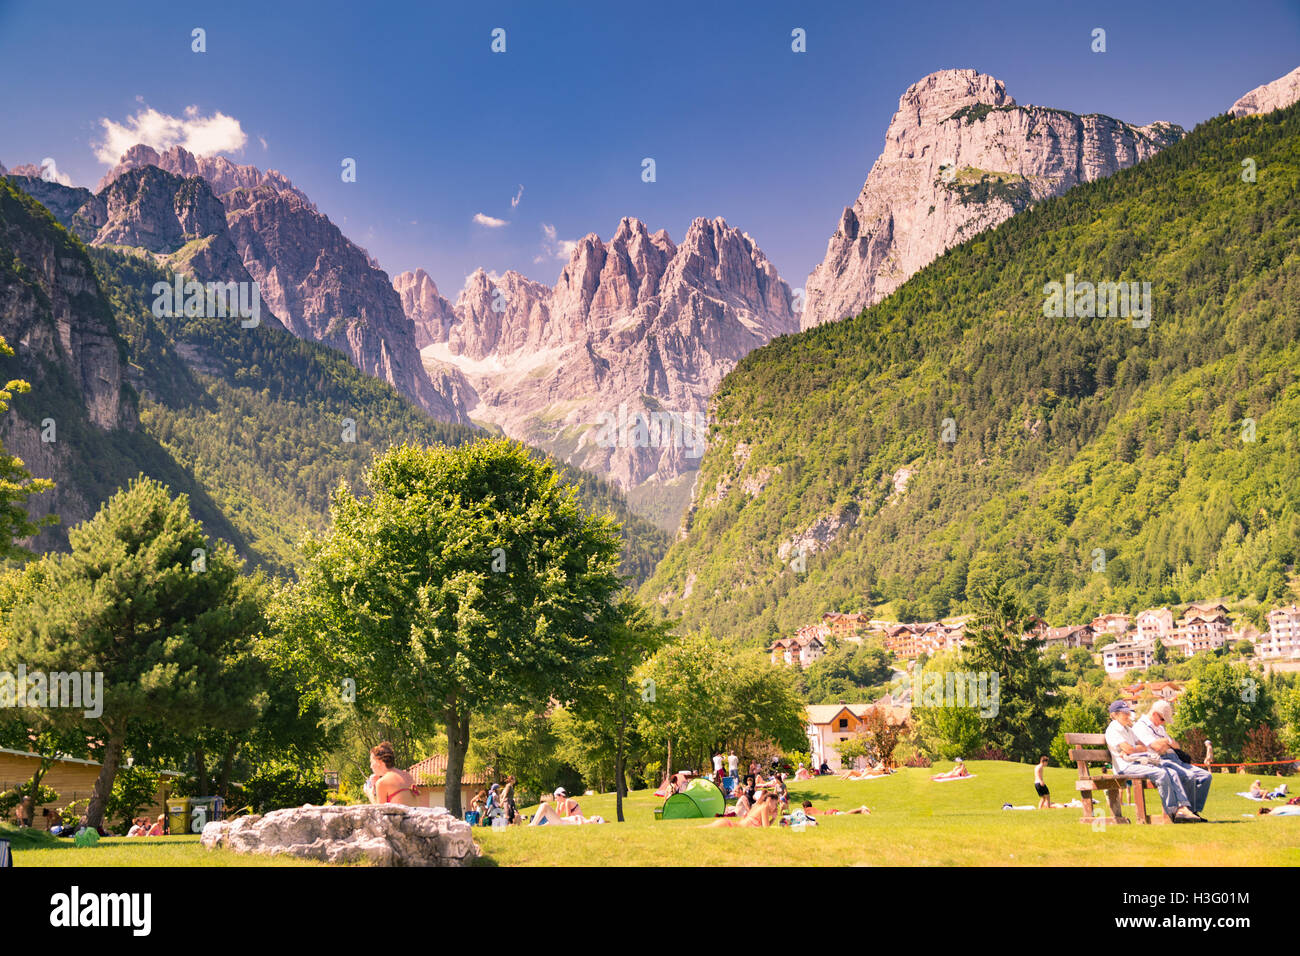 Molveno, Italie - 10 juin 2015 : une vue sur les Dolomites, les Alpes italiennes célèbres dans le monde entier. Banque D'Images